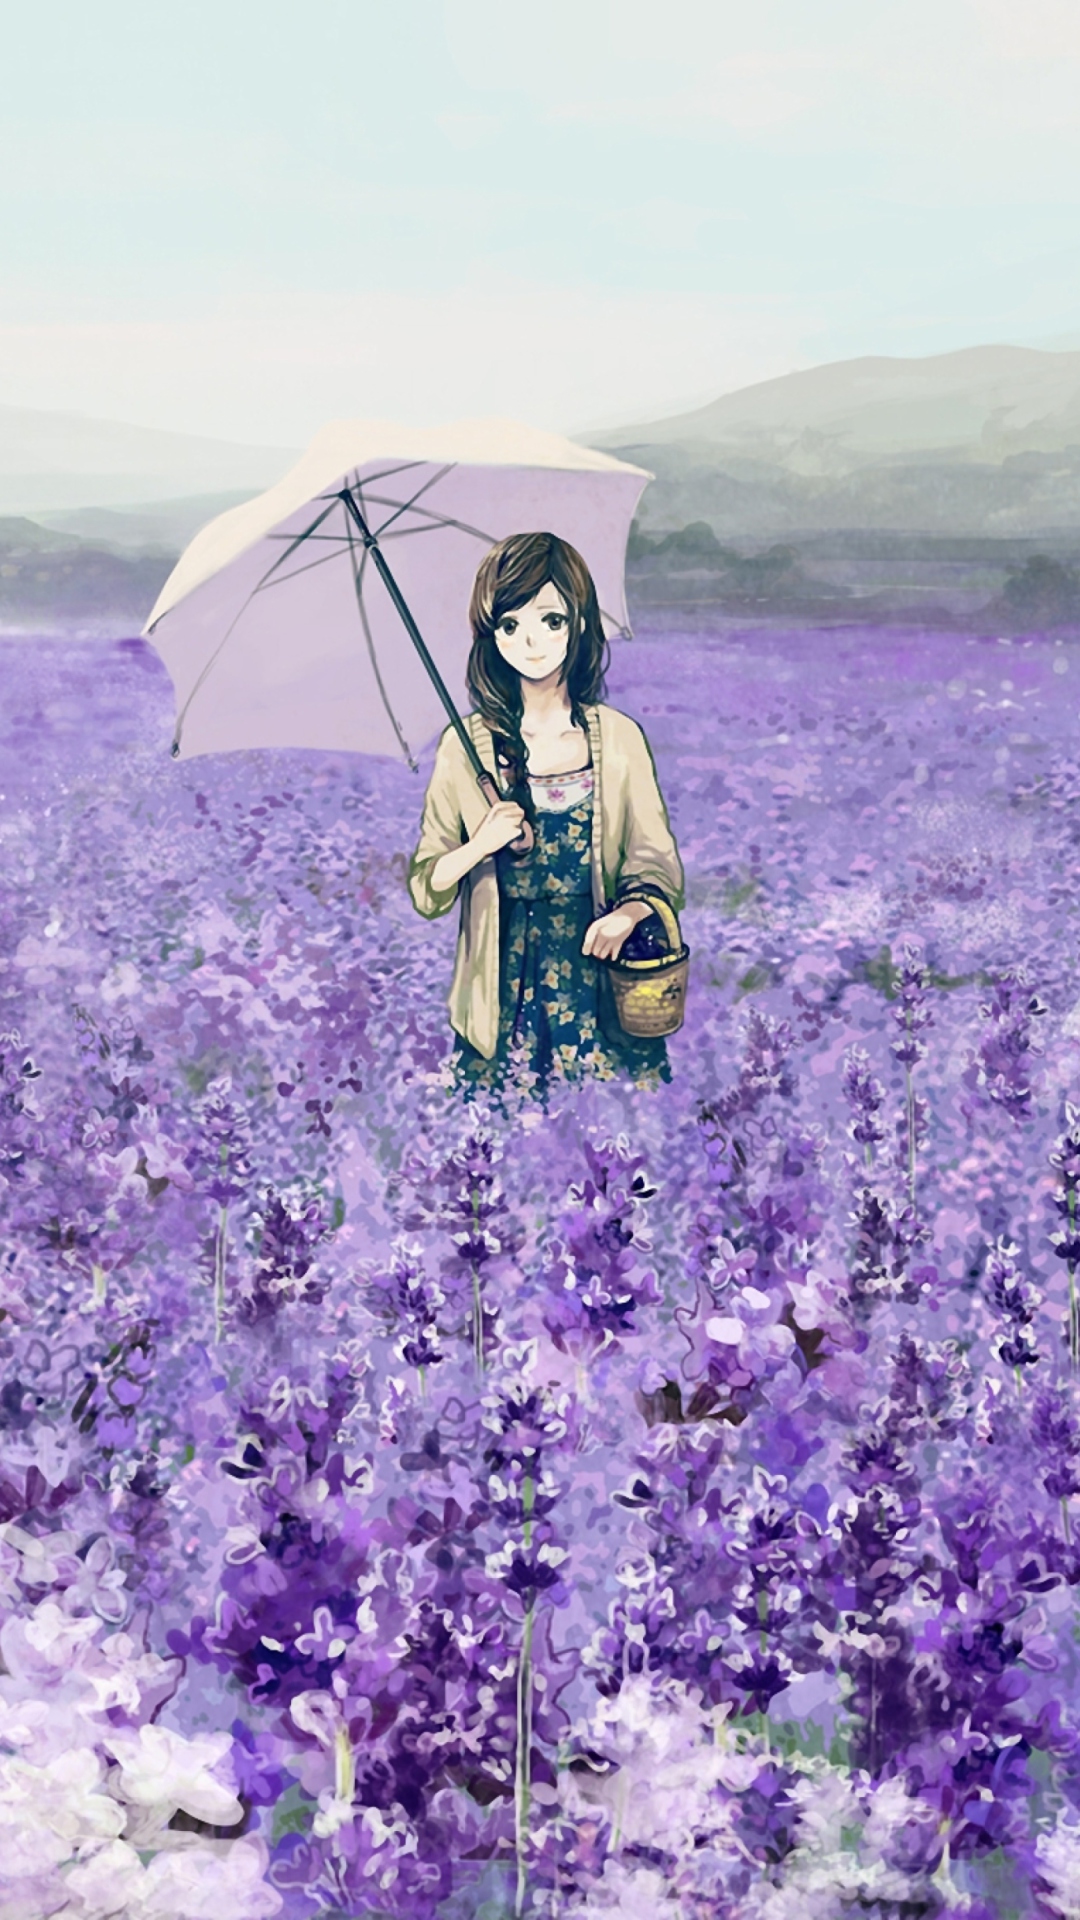 Sfondi Girl With Umbrella In Lavender Field 1080x1920